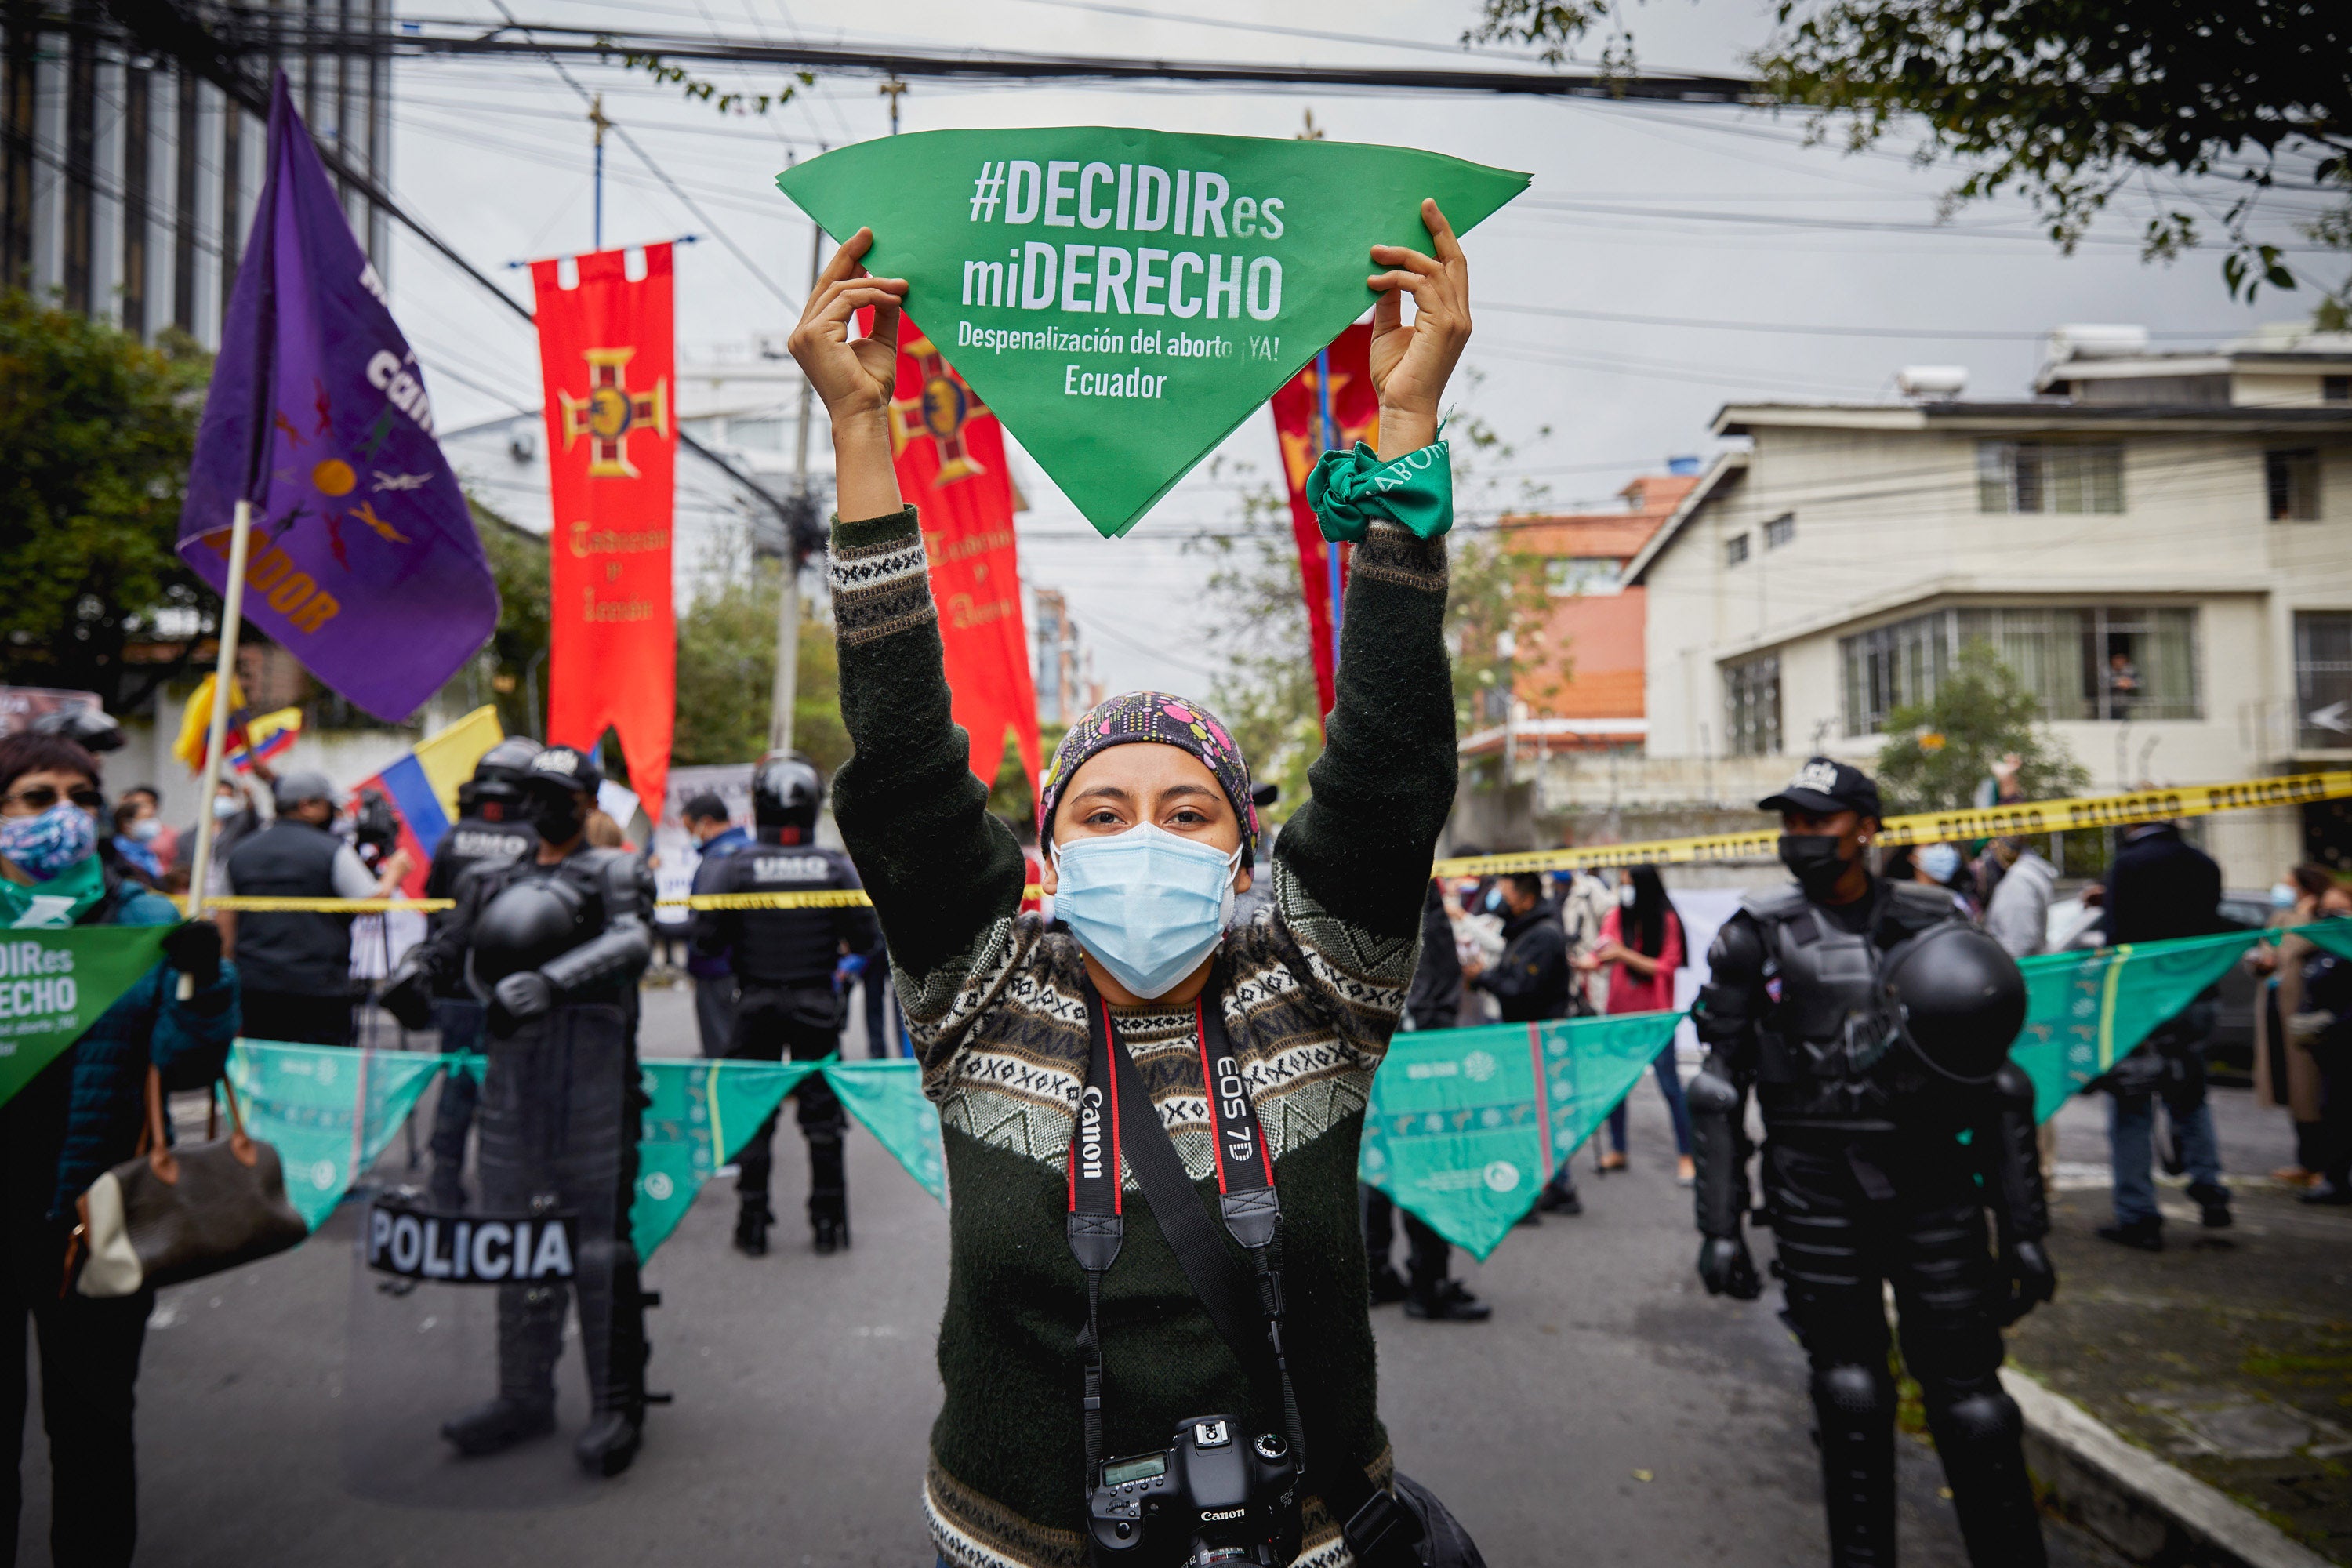 Lors d’une manifestation en faveur du droit à l’avortement en Équateur, cette jeune femme tenait une banderole avec le message « Decidir es mi derecho » (« Décider est mon droit »).